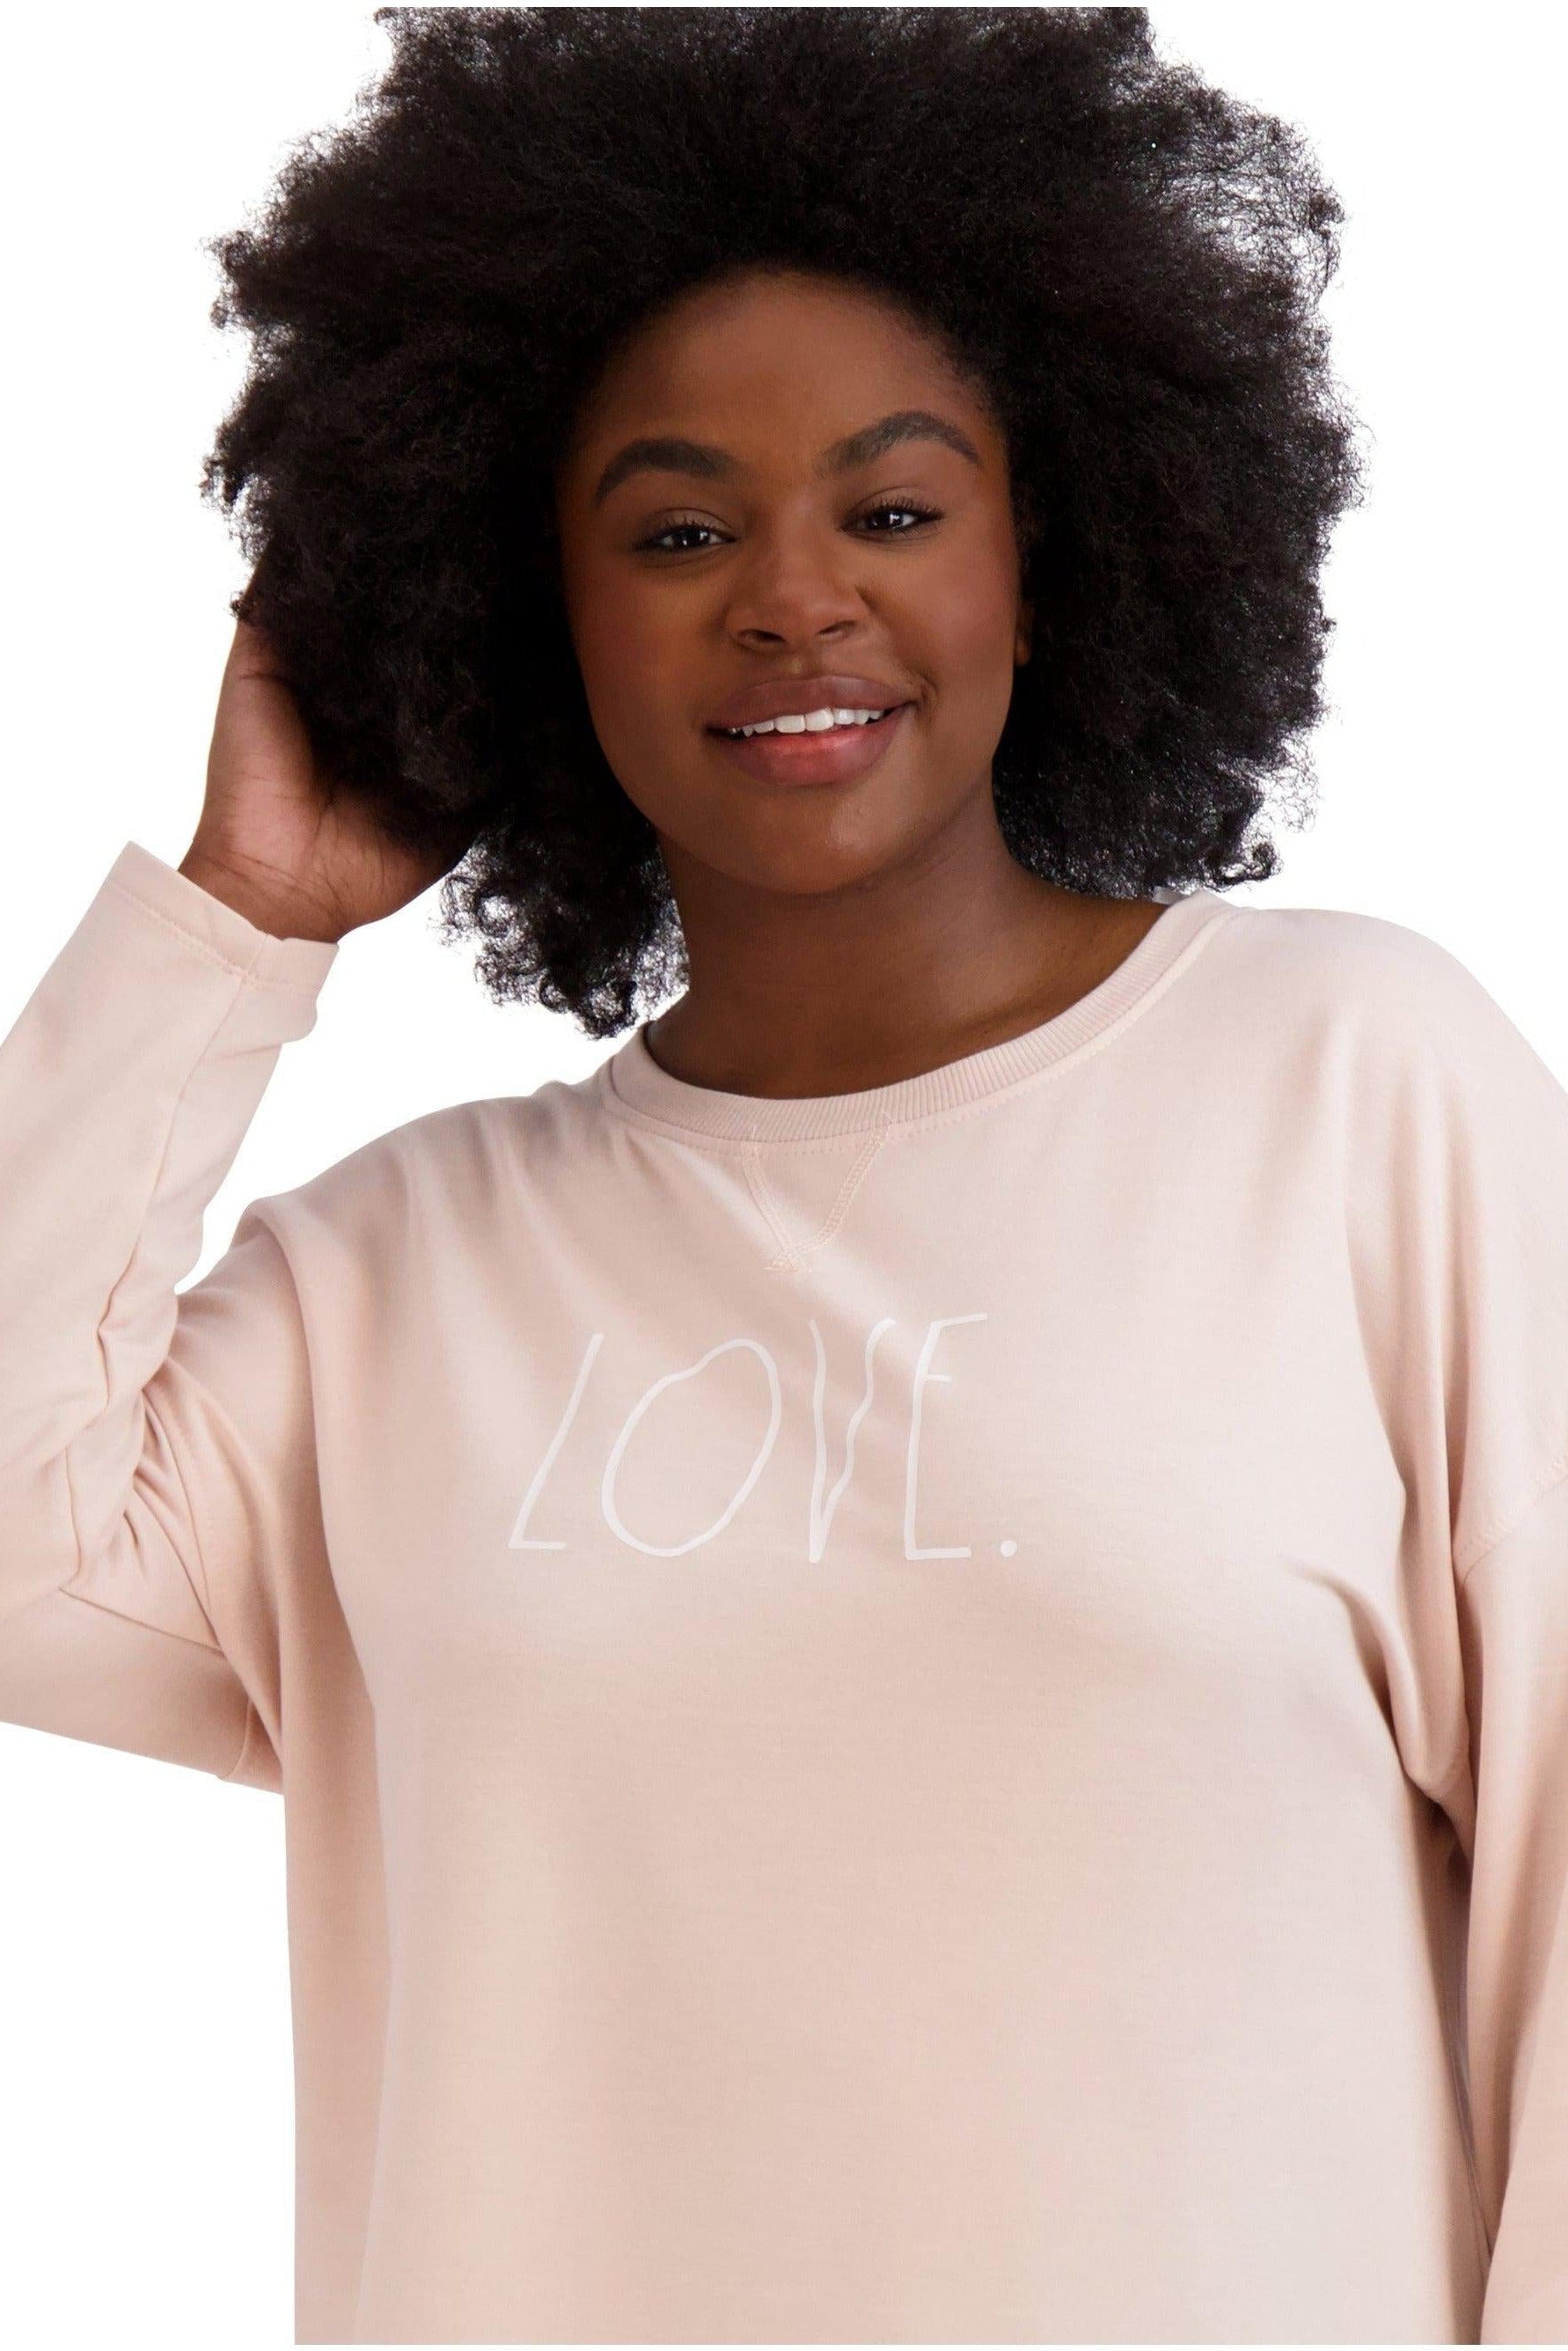 Women's Plus Size "LOVE" HiLo Pullover Sweatshirt - Rae Dunn Wear